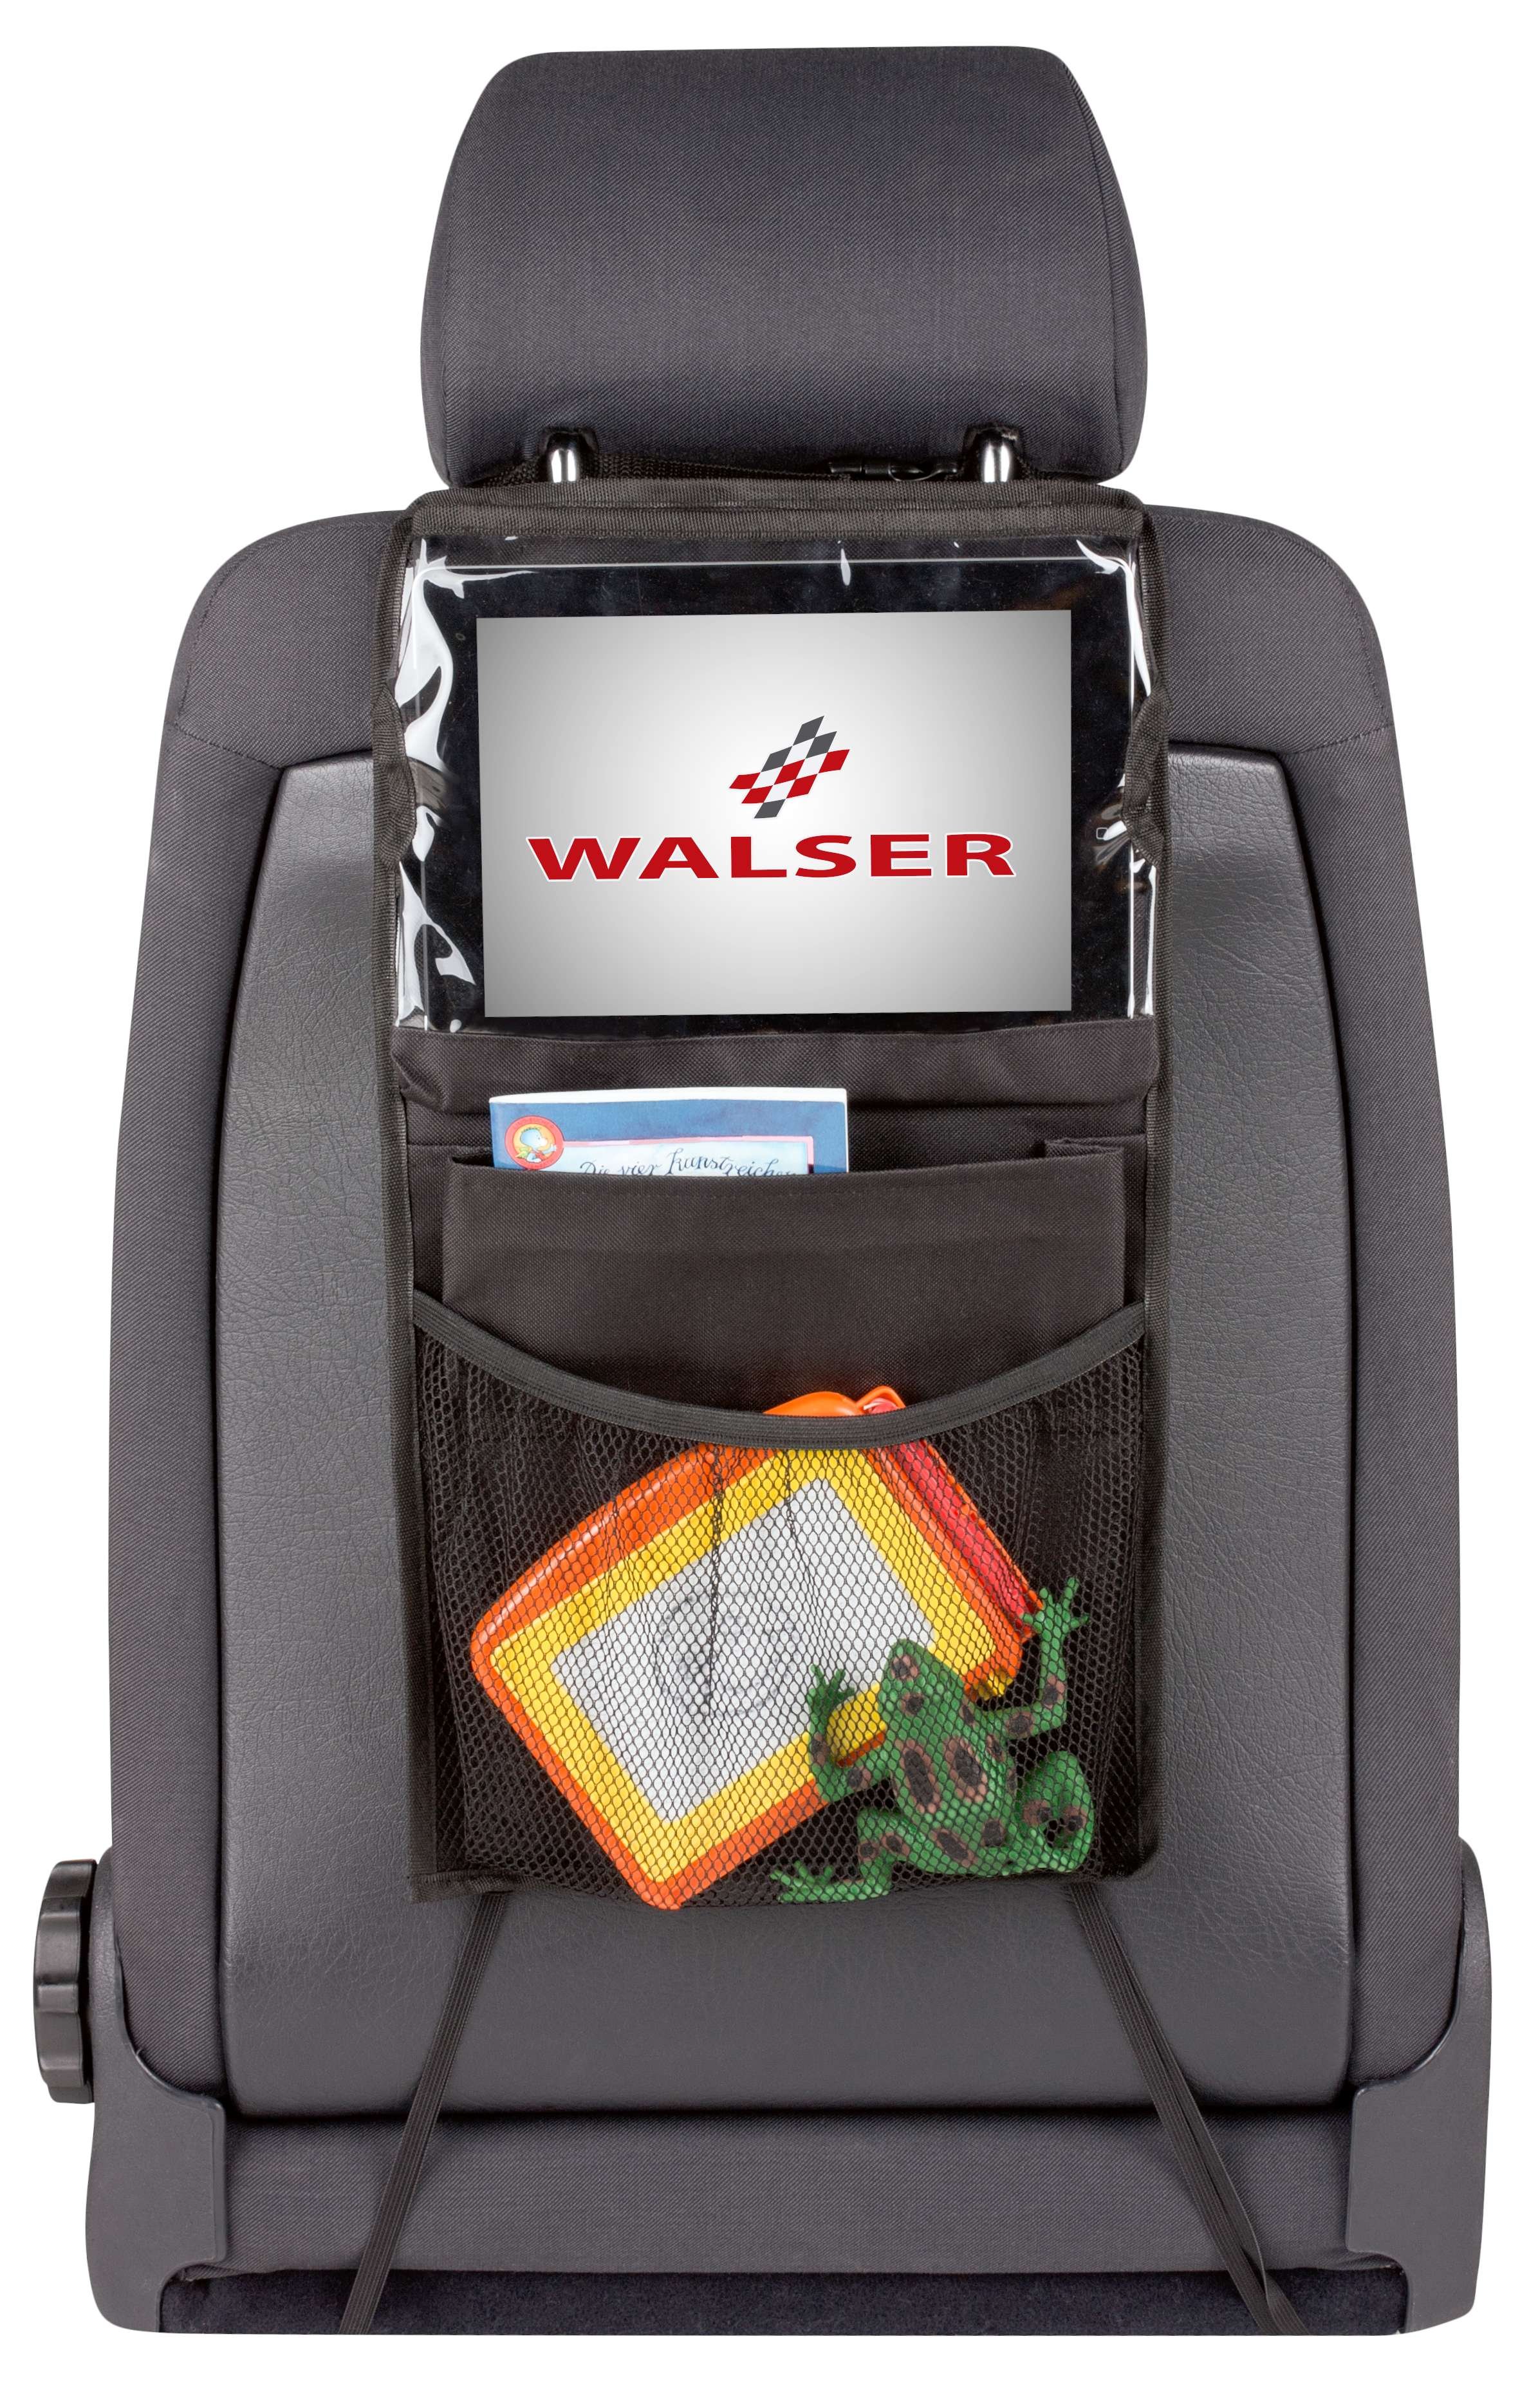 PKW-Rücksitztasche Midi mit Tablet-Halter, Auto-Organizer, Tablet-Halter-Auto schwarz